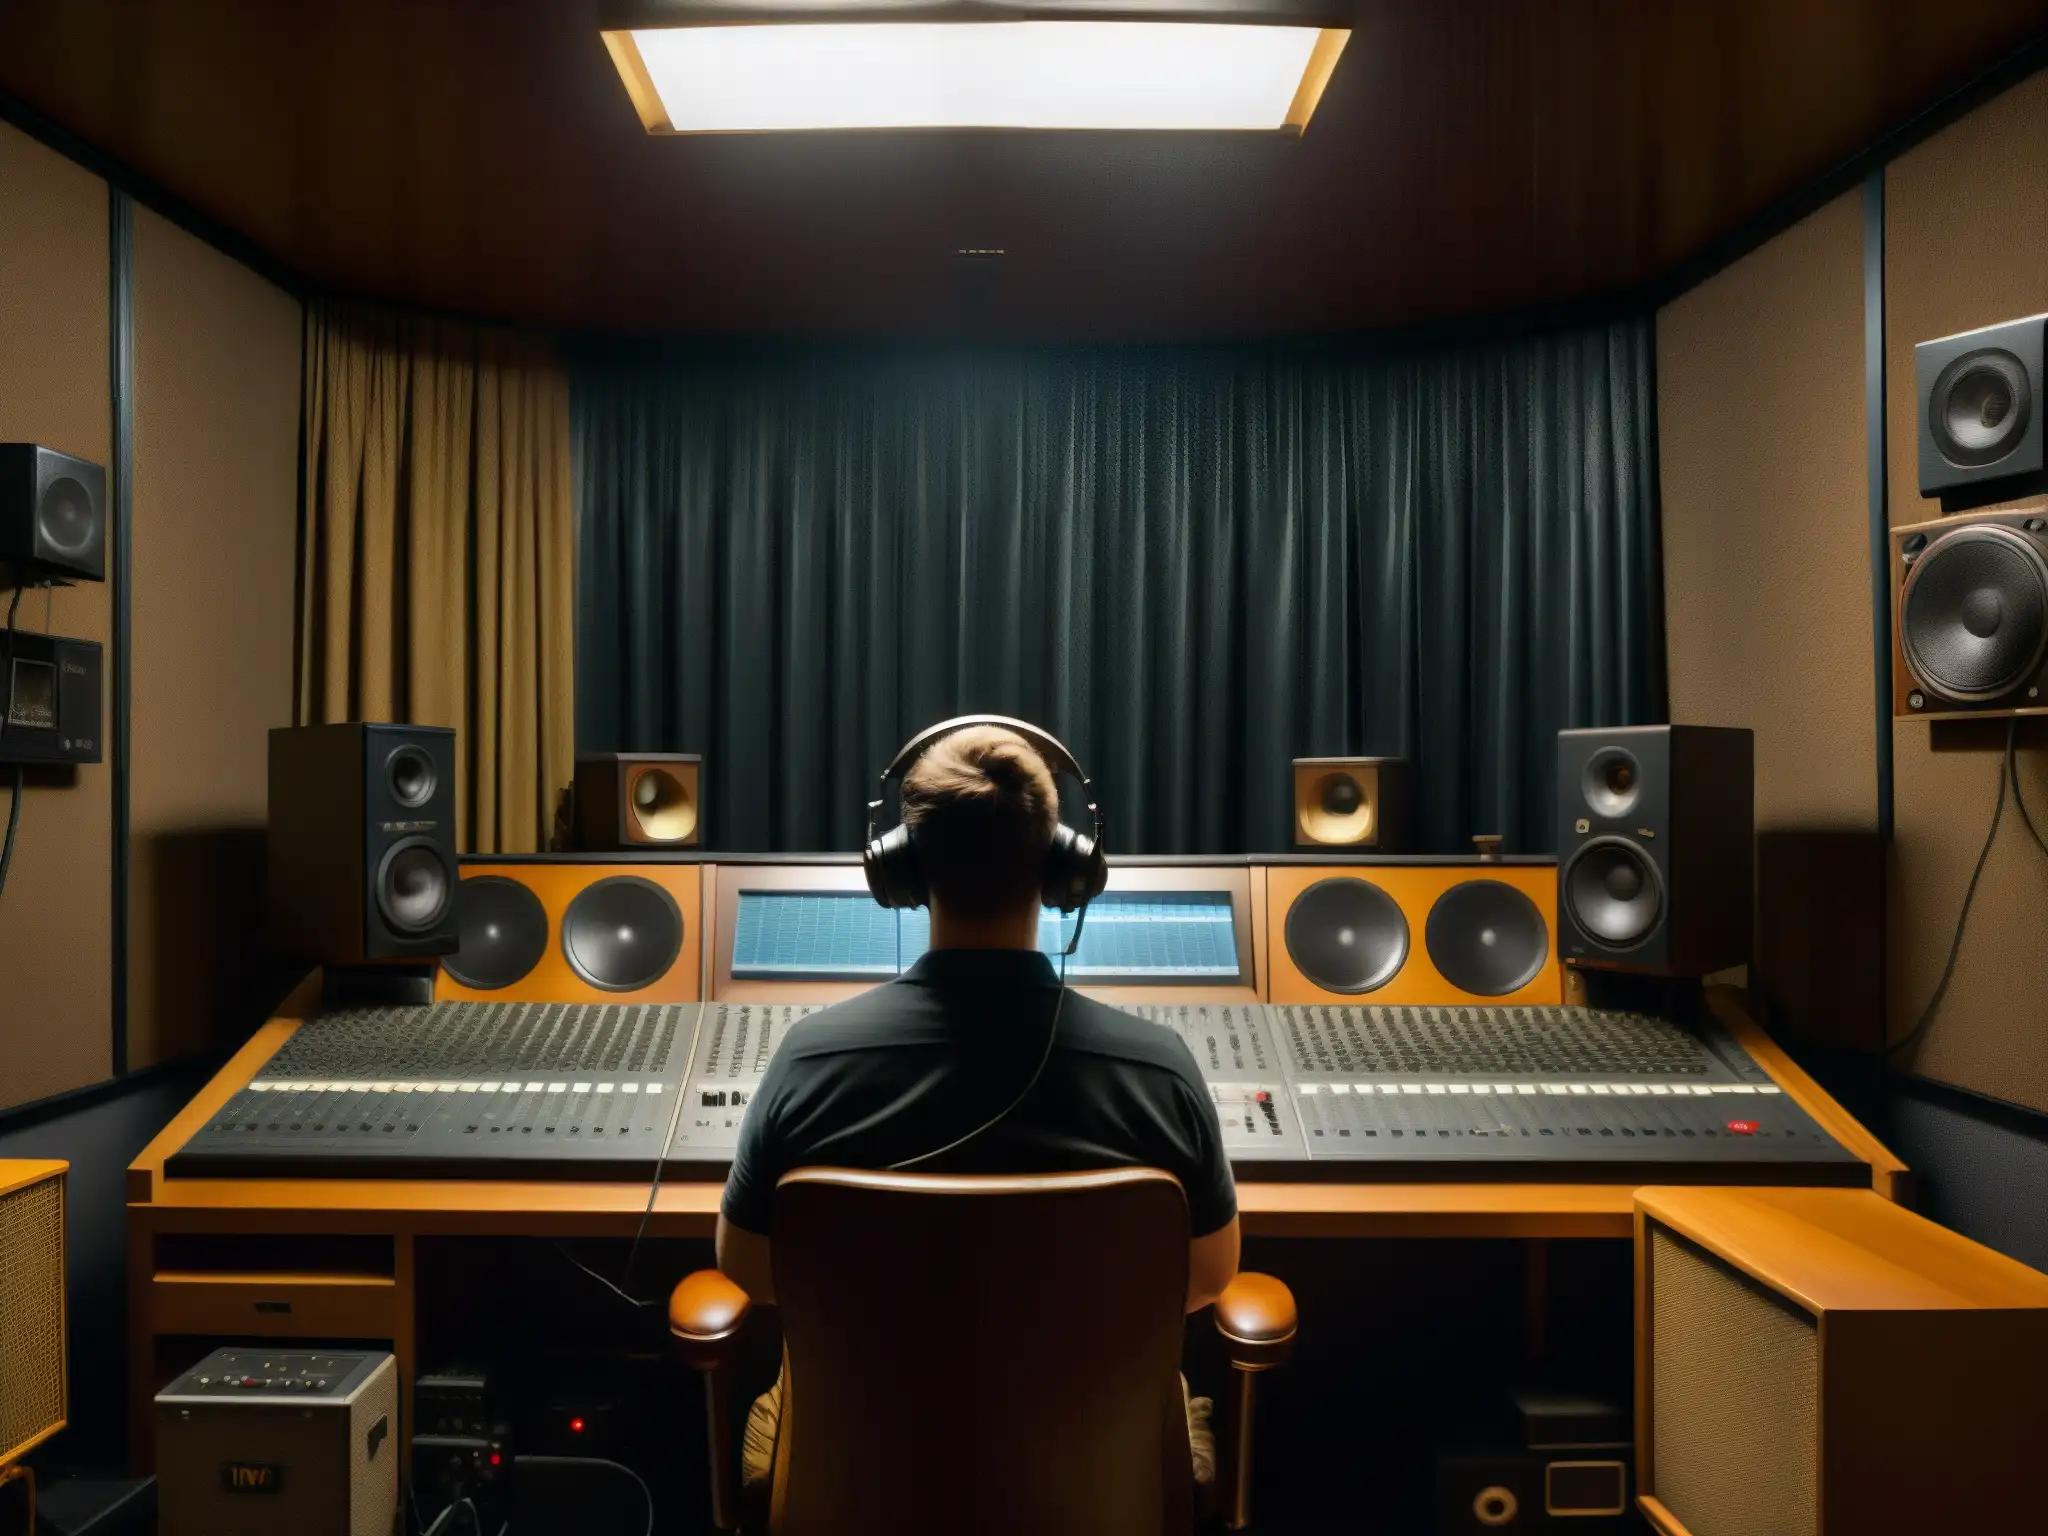 Un estudio de grabación tenue con micrófonos vintage, cables enredados y paneles insonorizantes en las paredes